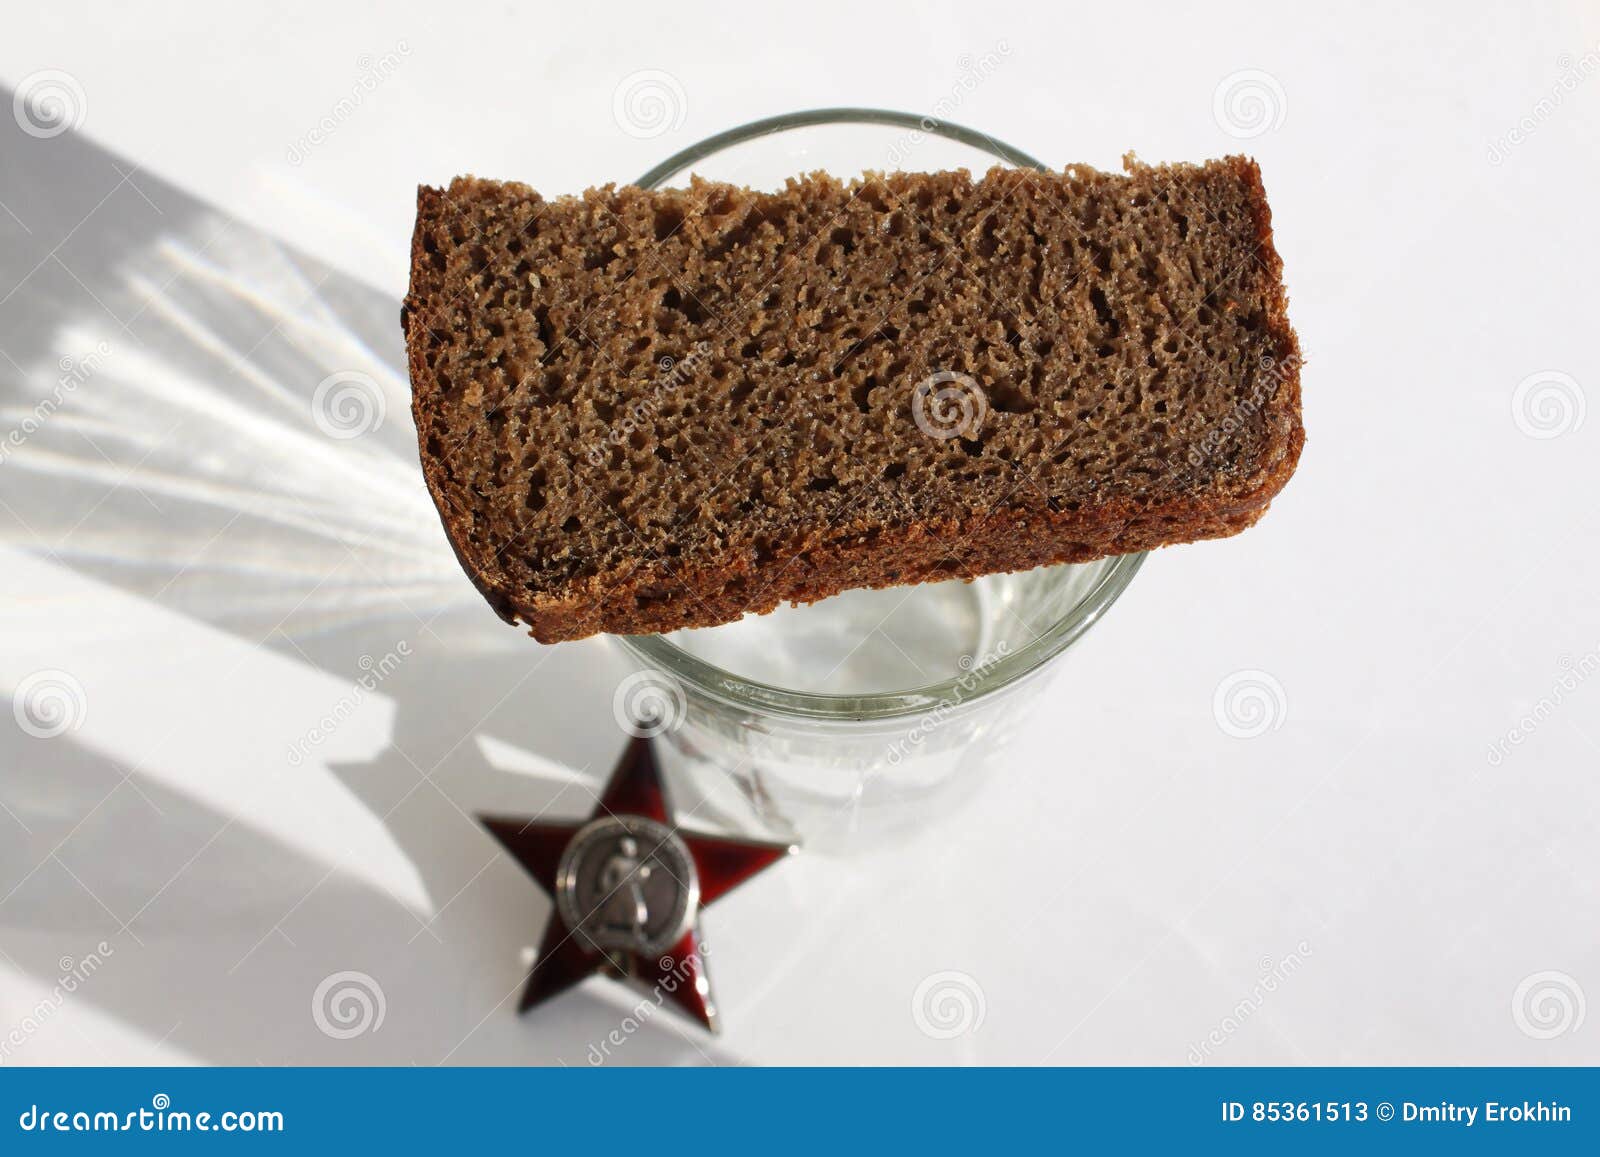 Хлеб на поминках. Рюмка с хлебом. Поминальный стакан с хлебом. Стакан накрытый хлебом.